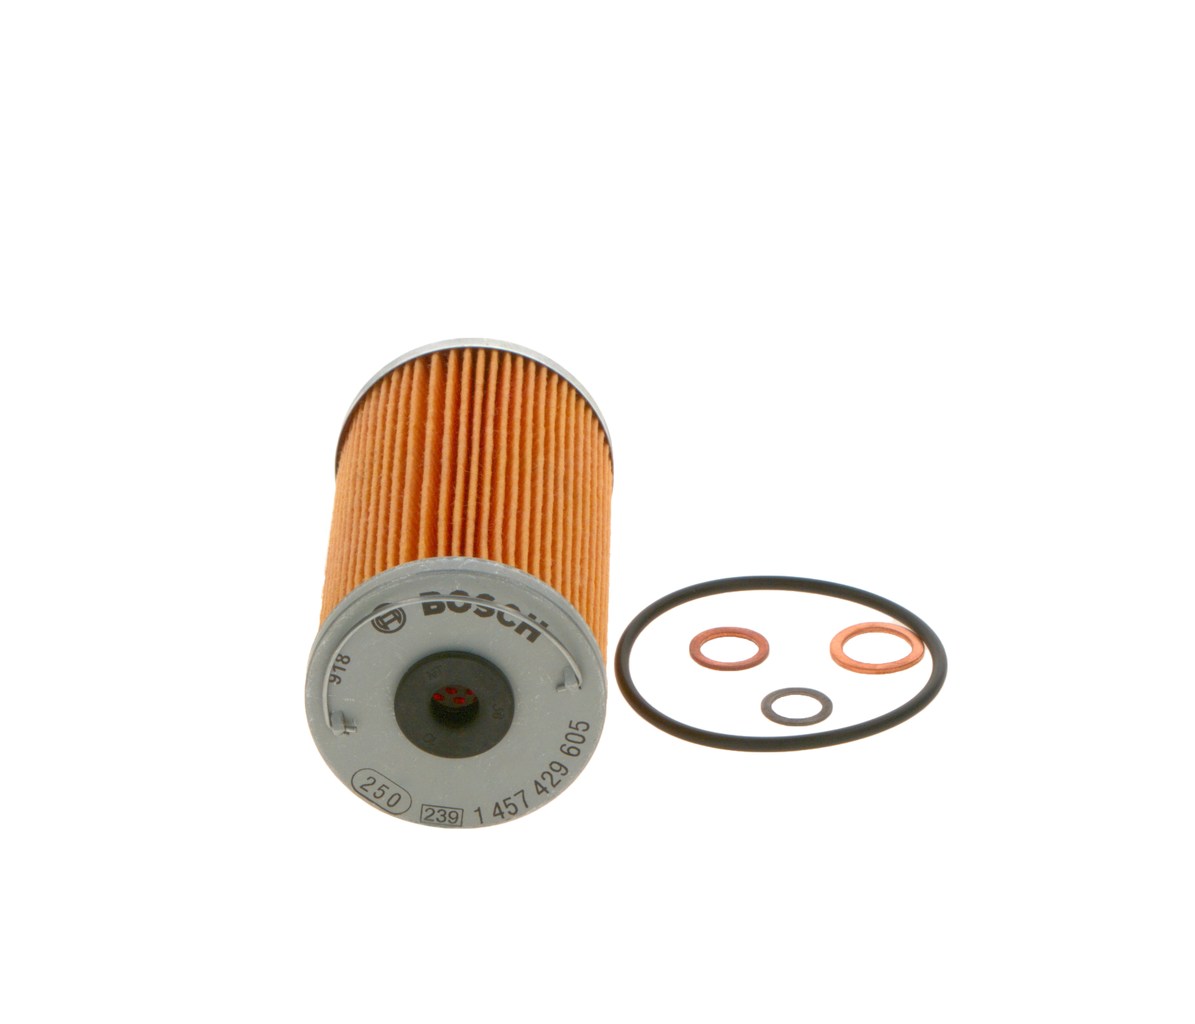 OF-MB-8 BOSCH Filter Insert Inner Diameter 2: 19,4, 9mm, Ø: 59mm, Height: 106mm Oil filters 1 457 429 606 buy